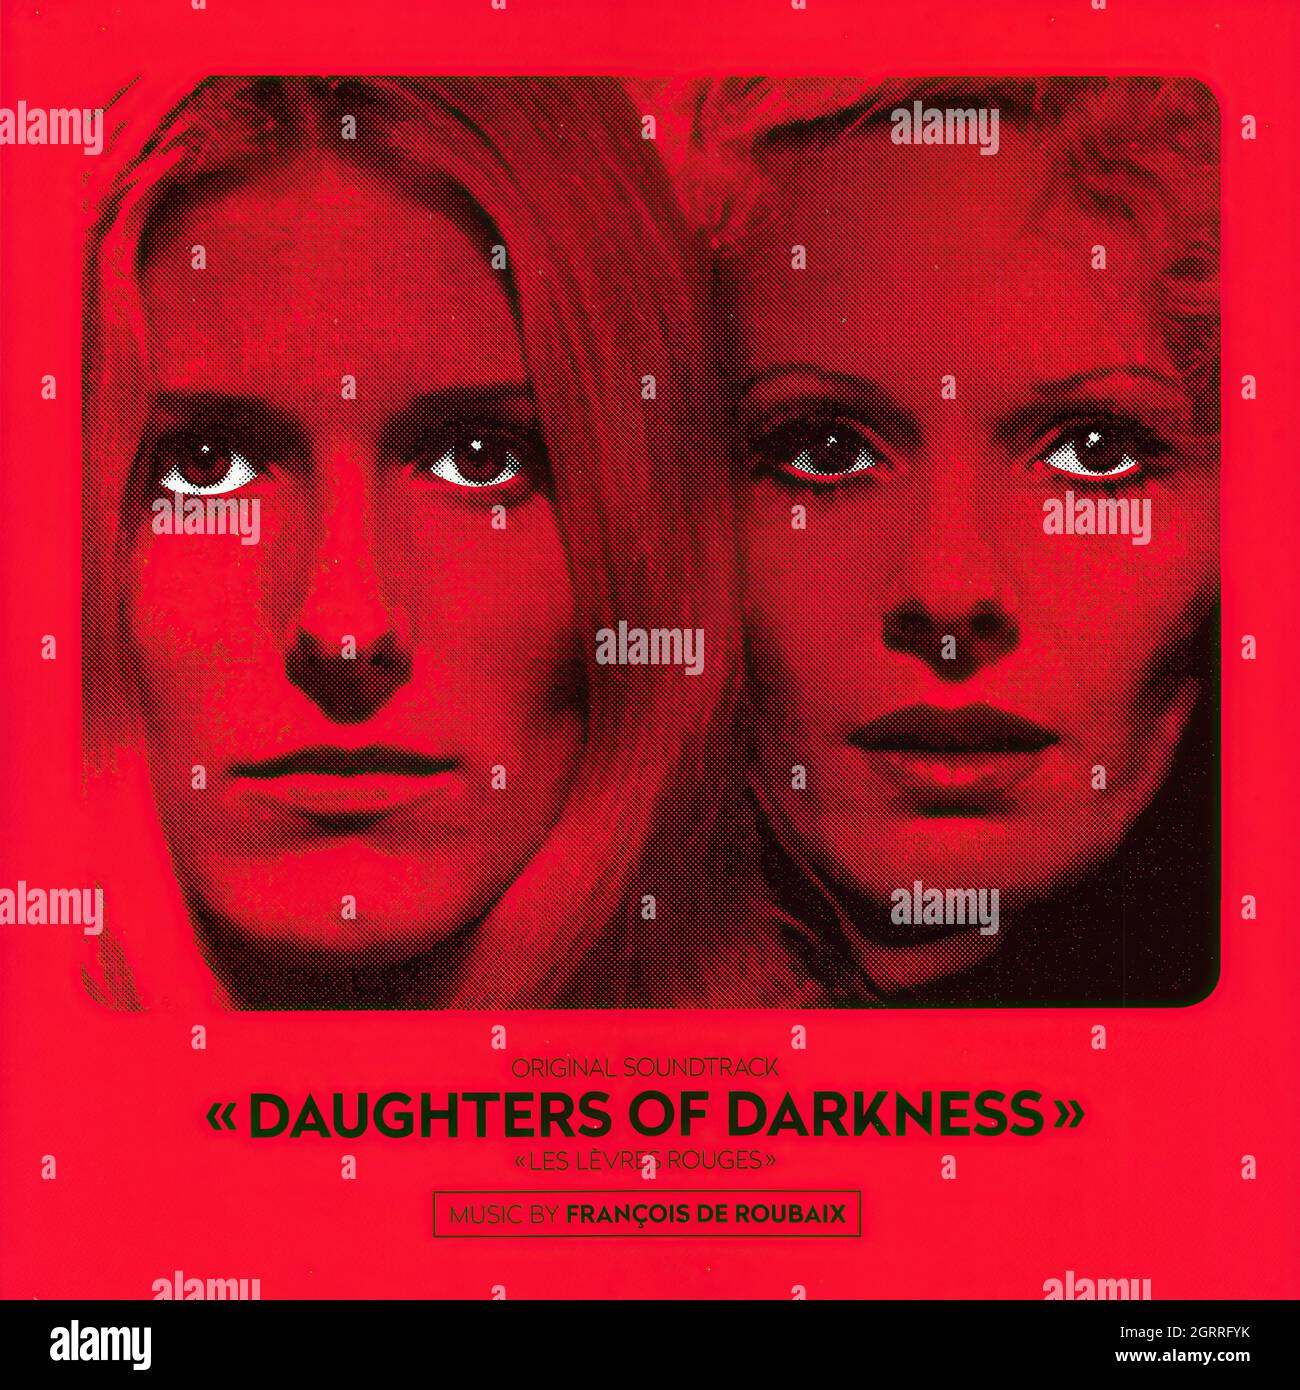 François De Roubaix - Daughters of darkness (Les lèvres rouges) o.s.t. - Vintage Vinyl Record Cover Stock Photo